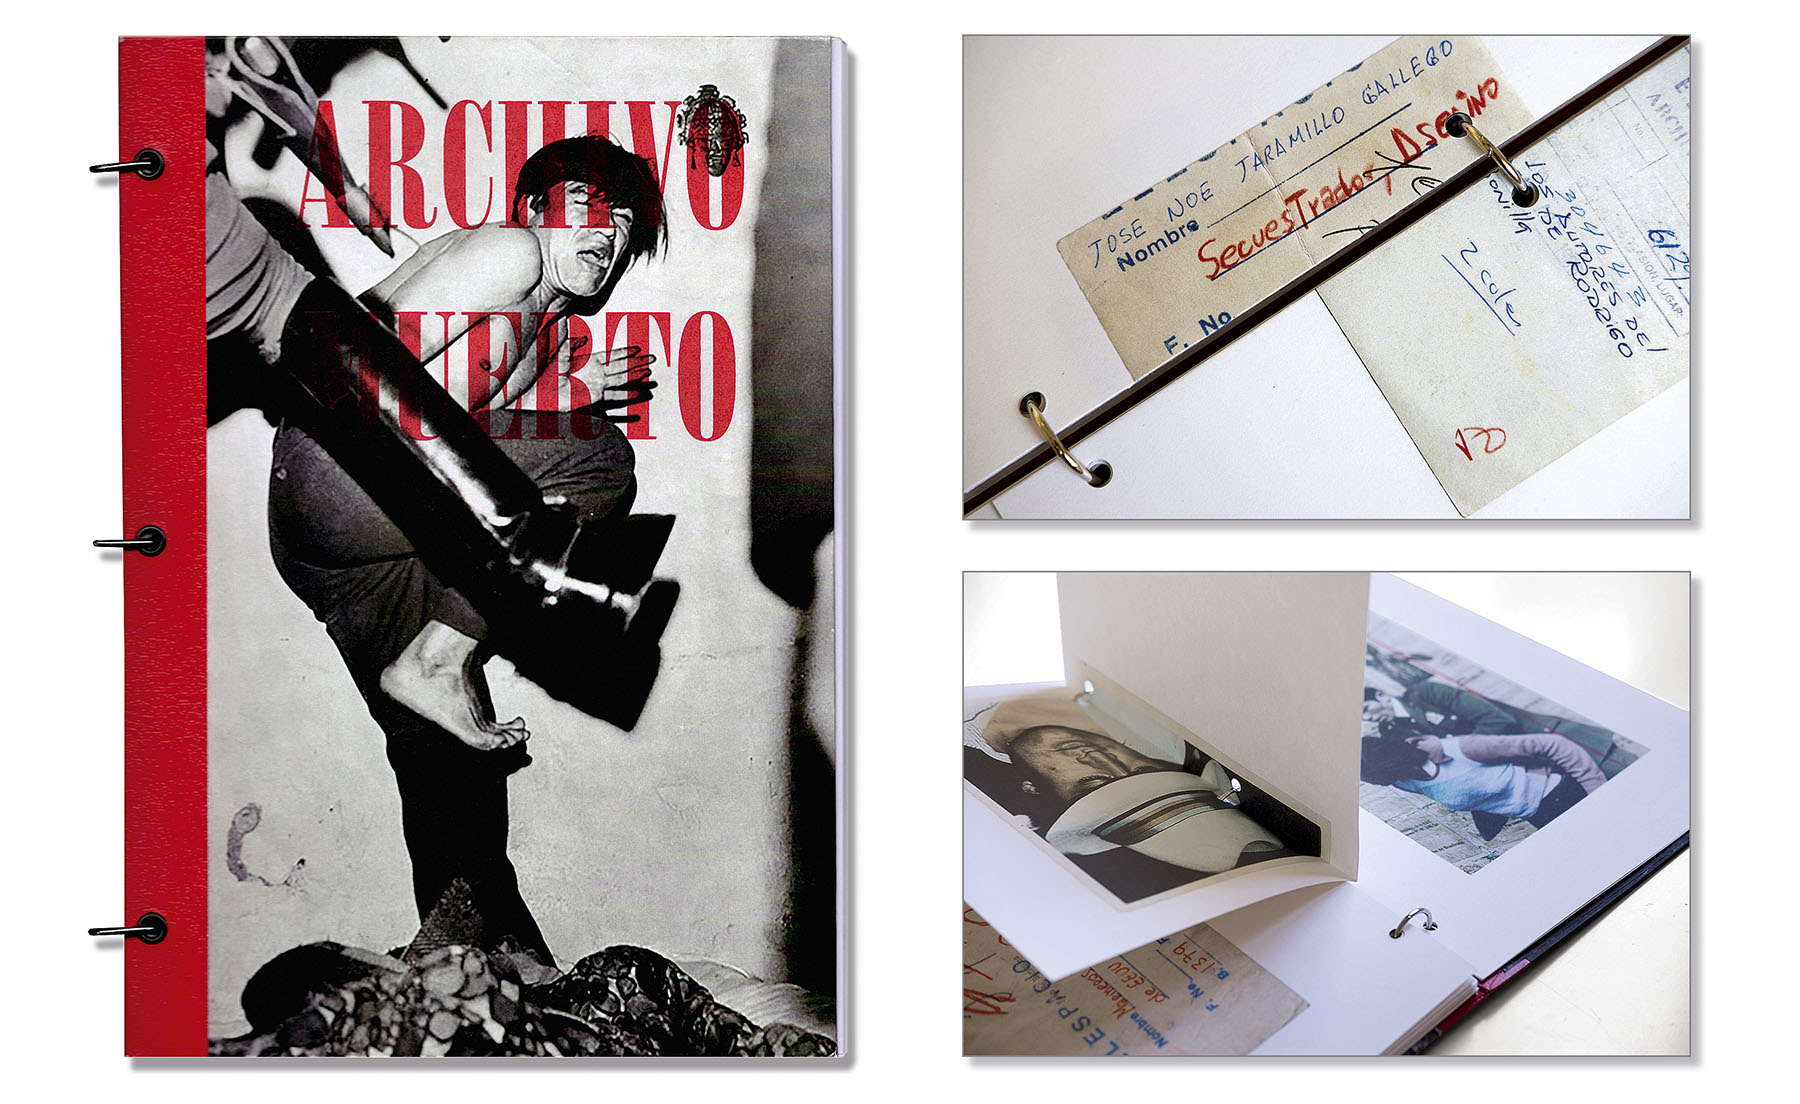 Álbumes de fotos y fotolibros tradicionales - MILK Books